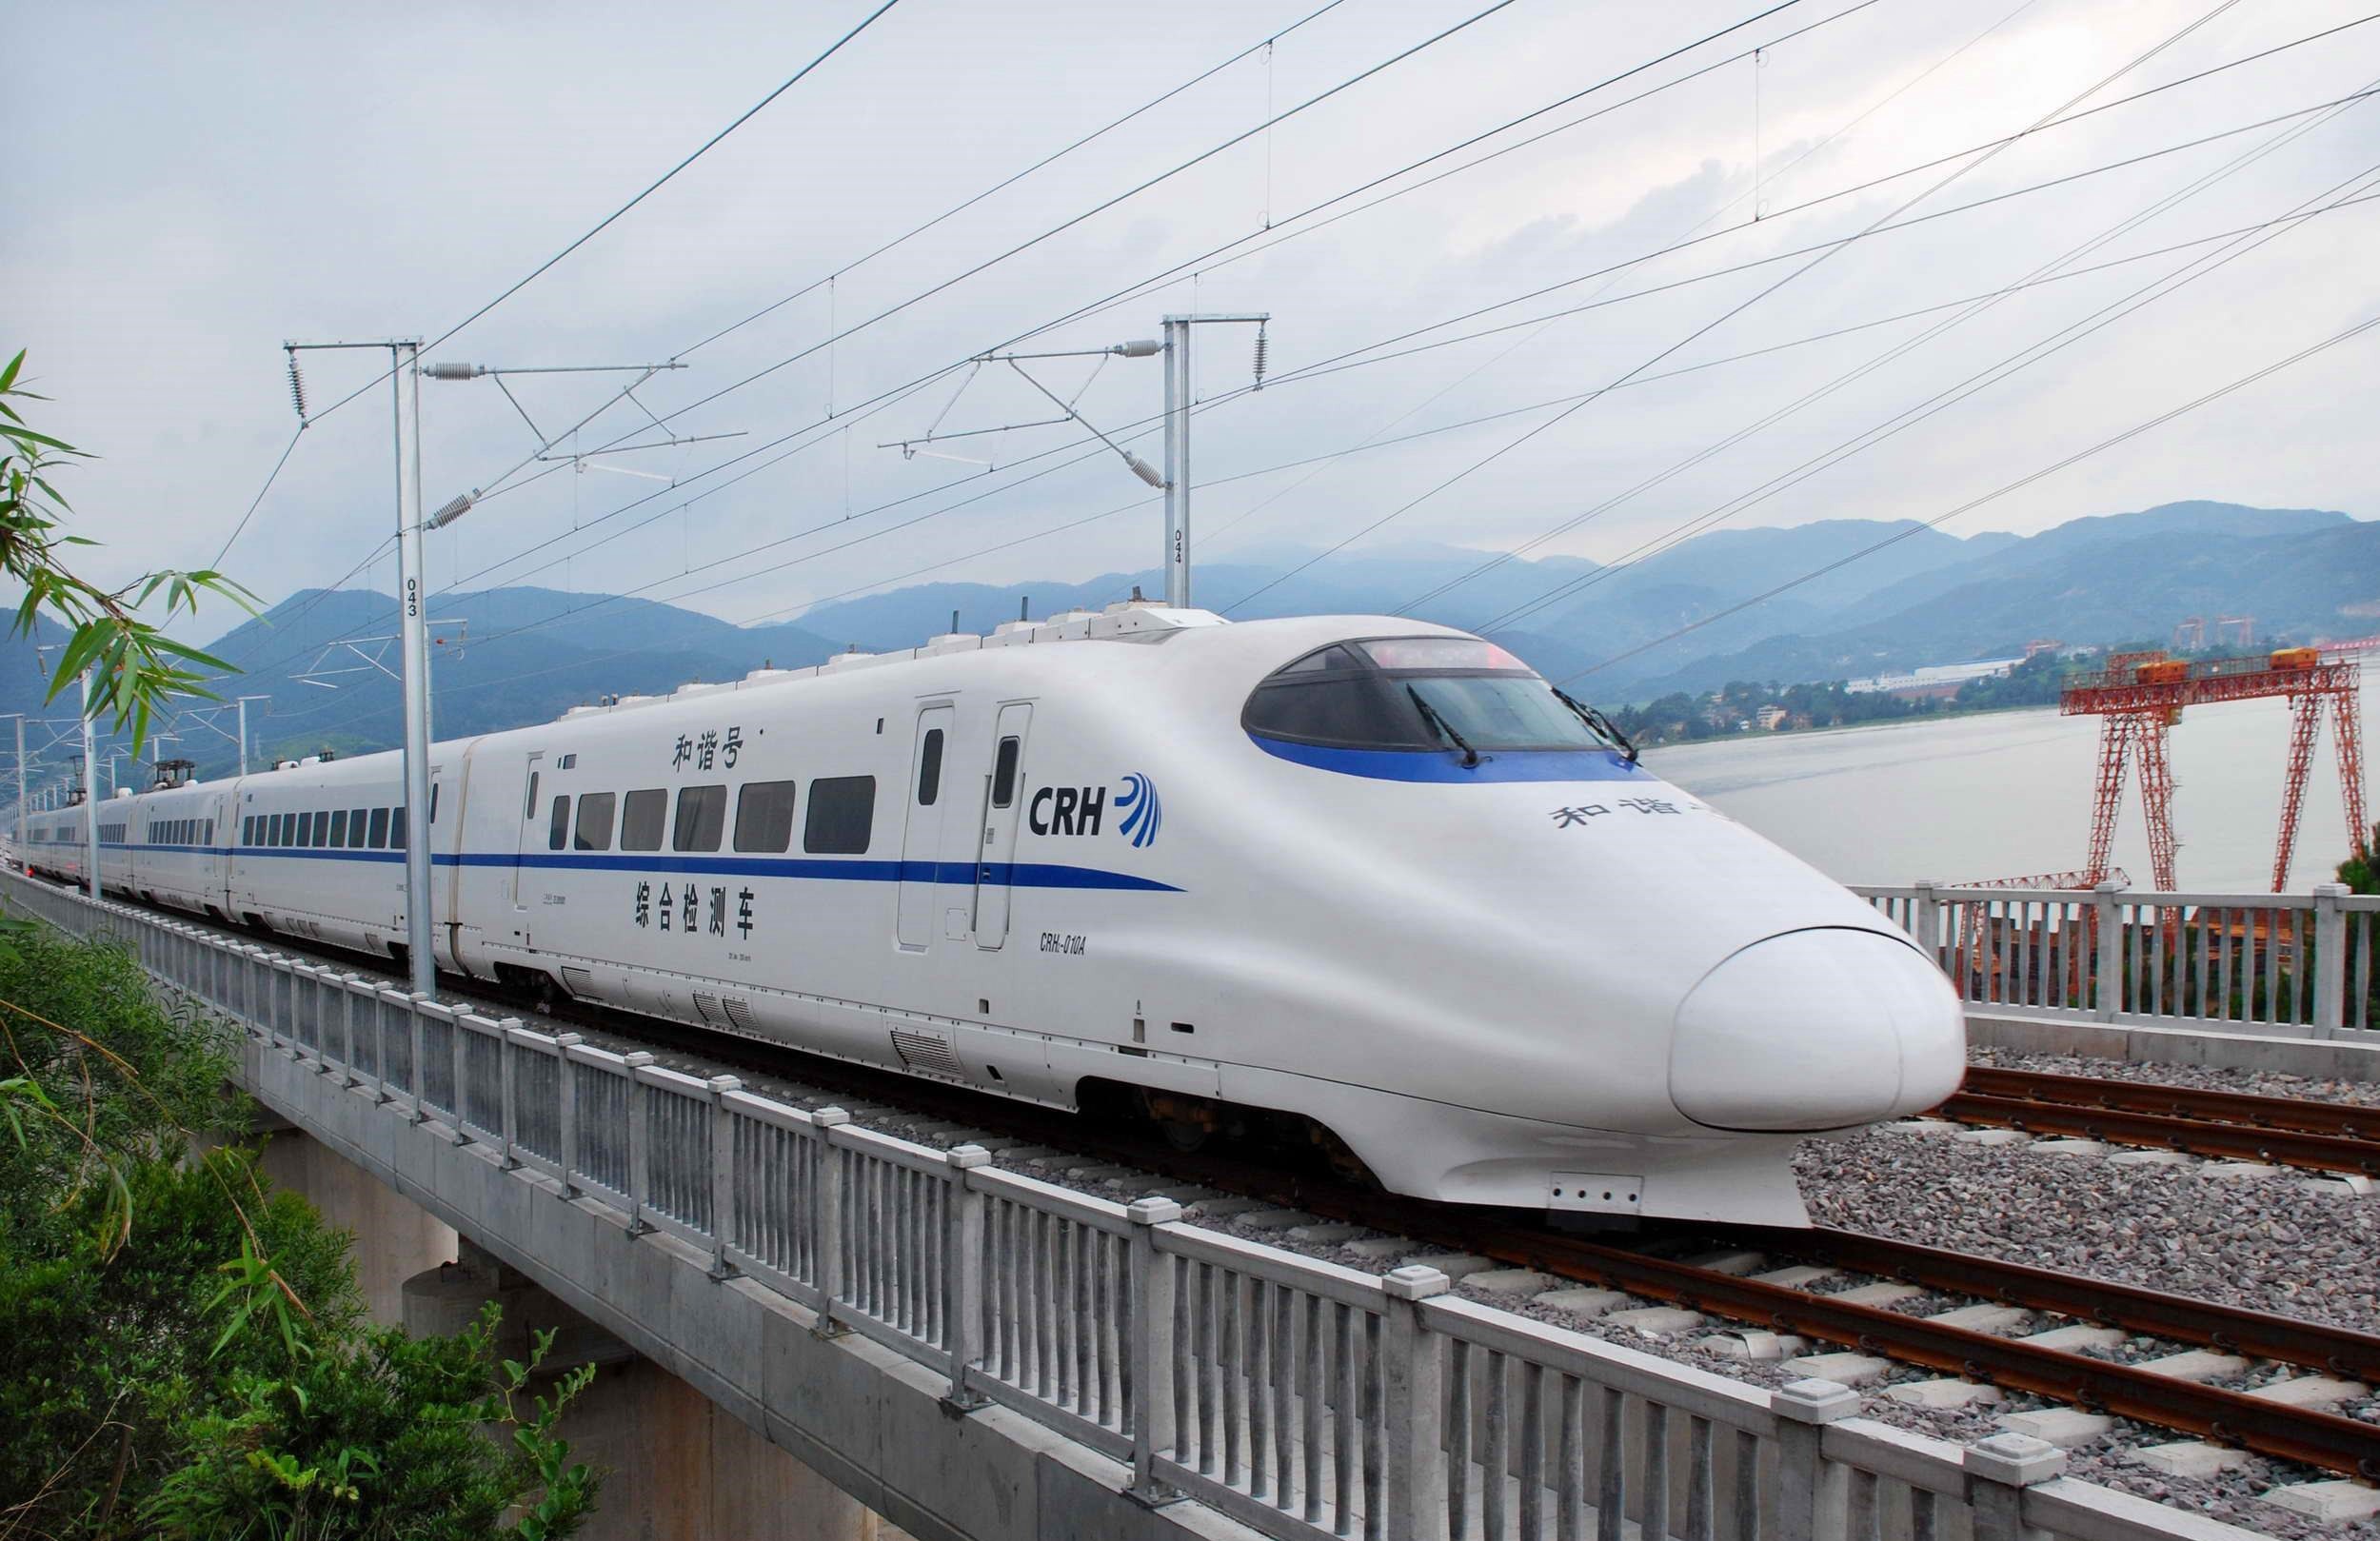 加速度传感器在铁路交通中的潜在应用